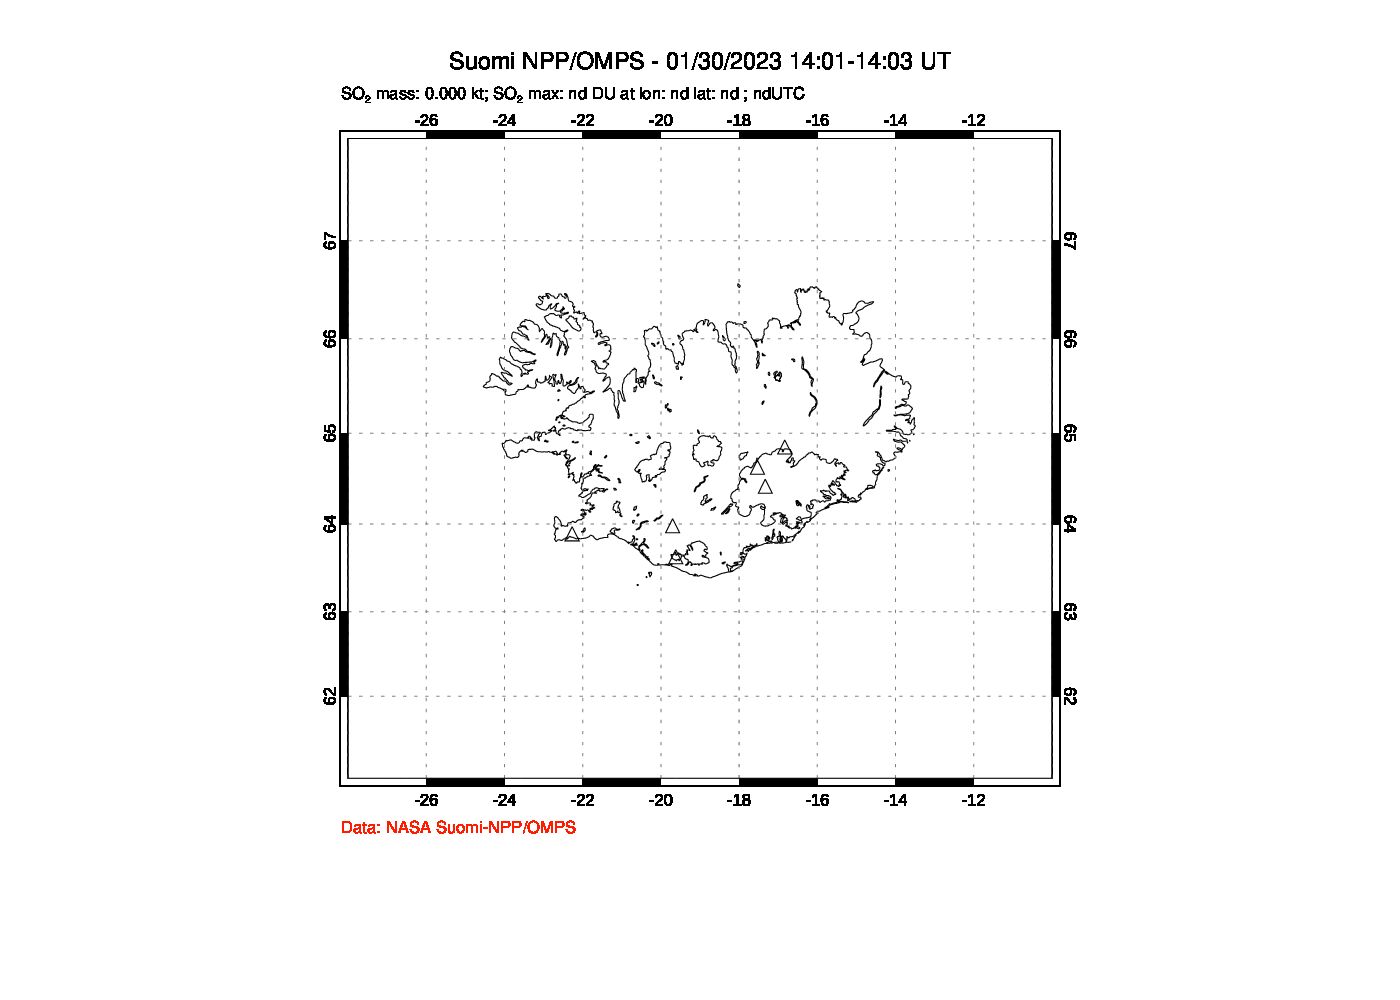 A sulfur dioxide image over Iceland on Jan 30, 2023.